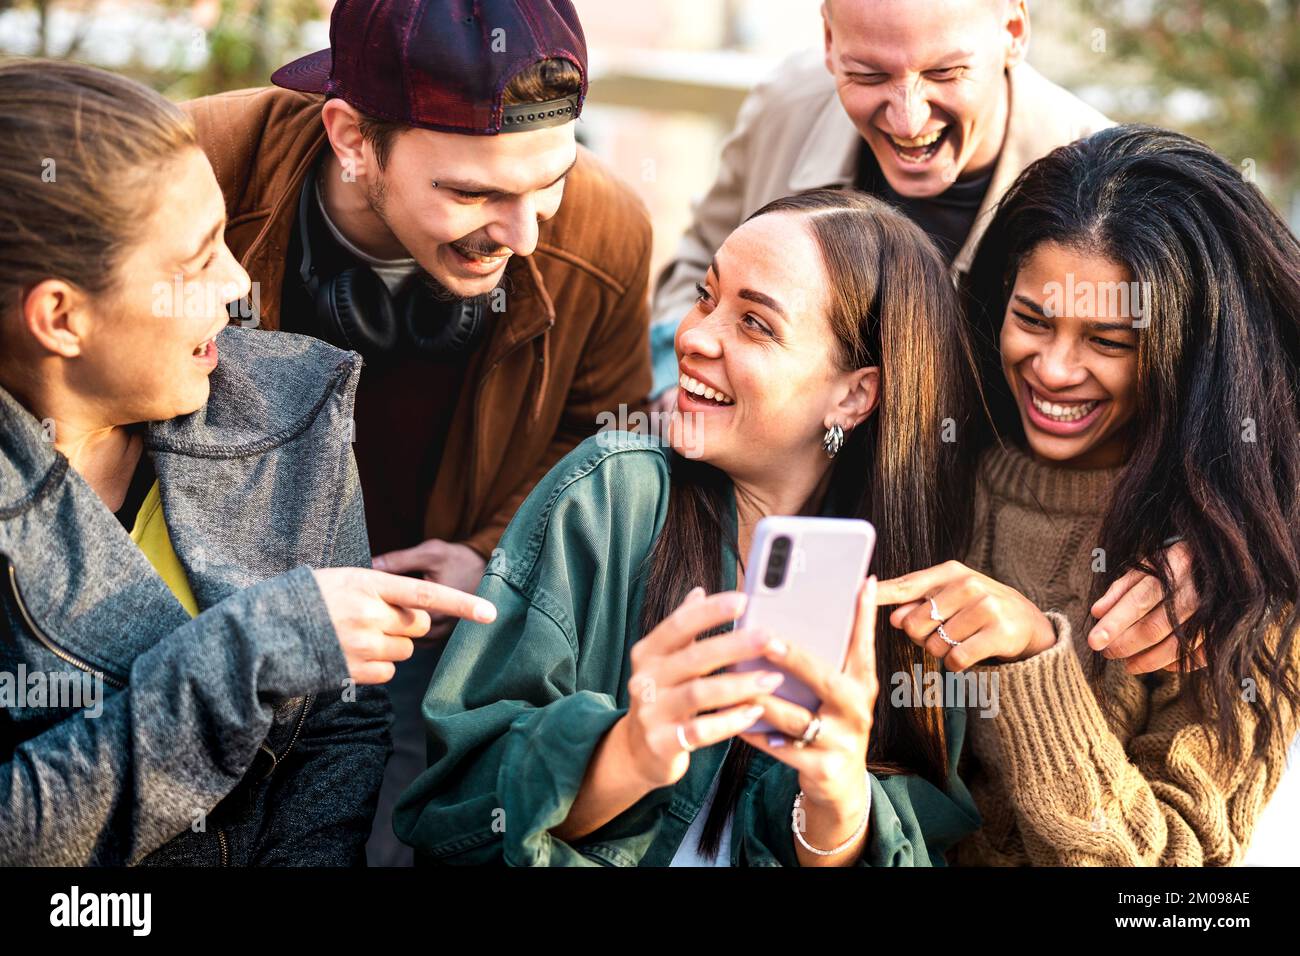 Les jeunes multiculturels s'amusent avec leur téléphone mobile dans la cour de la ville urbaine - des gars heureux et des filles qui passent du temps ensemble à partager du contenu amusant en ligne Banque D'Images